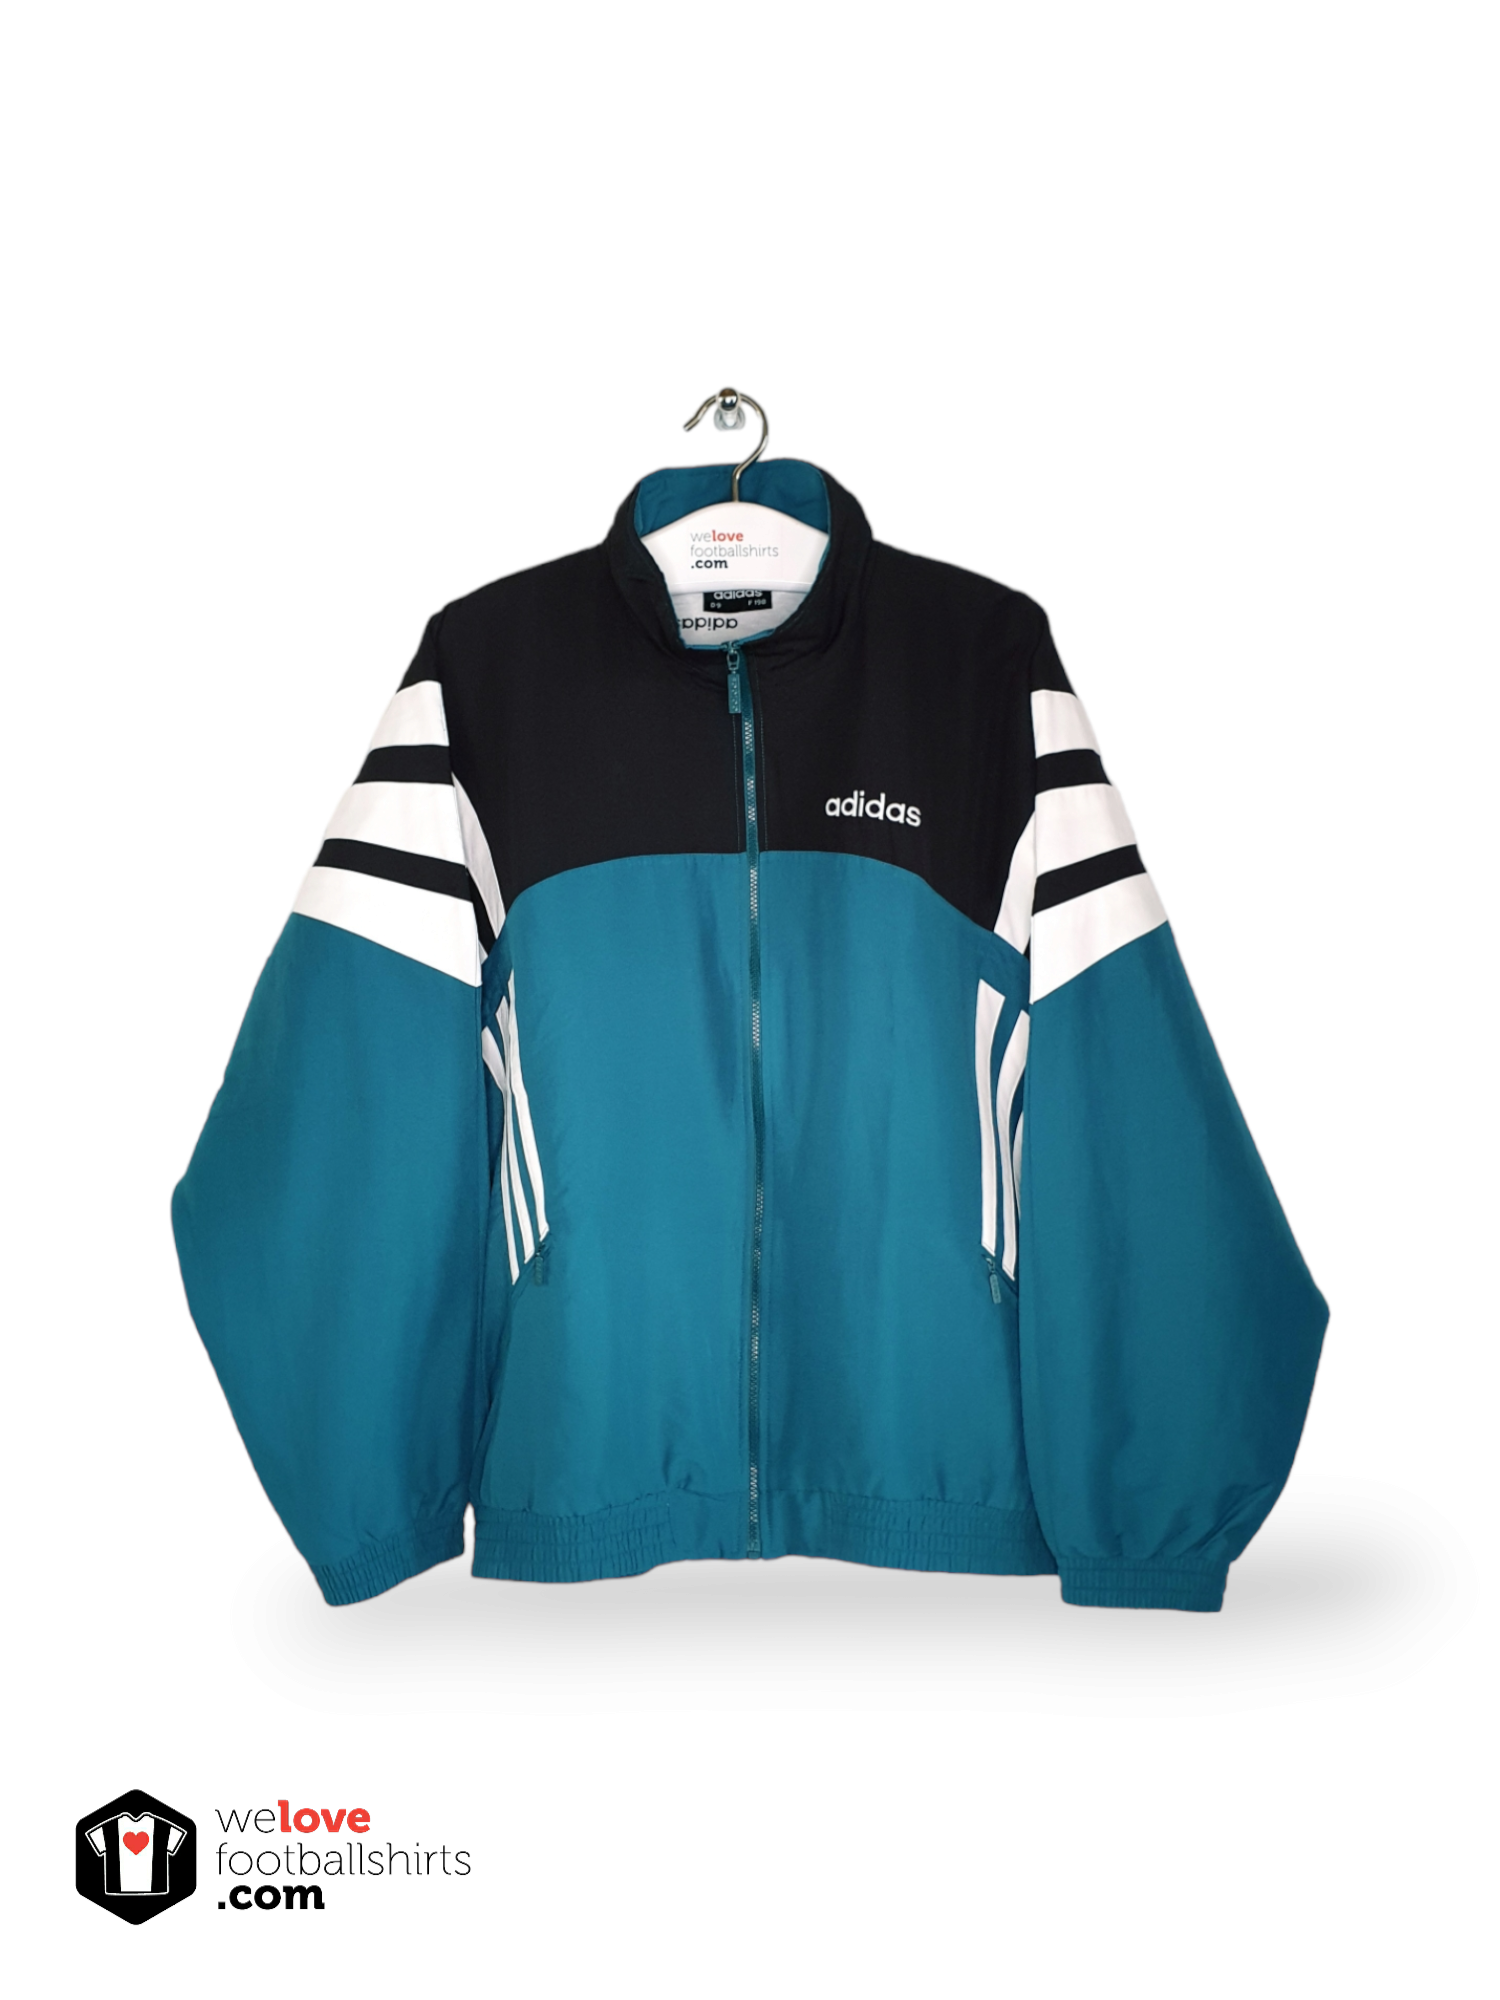 mest vejkryds dragt Adidas vintage track jacket 90s - Welovefootballshirts.com